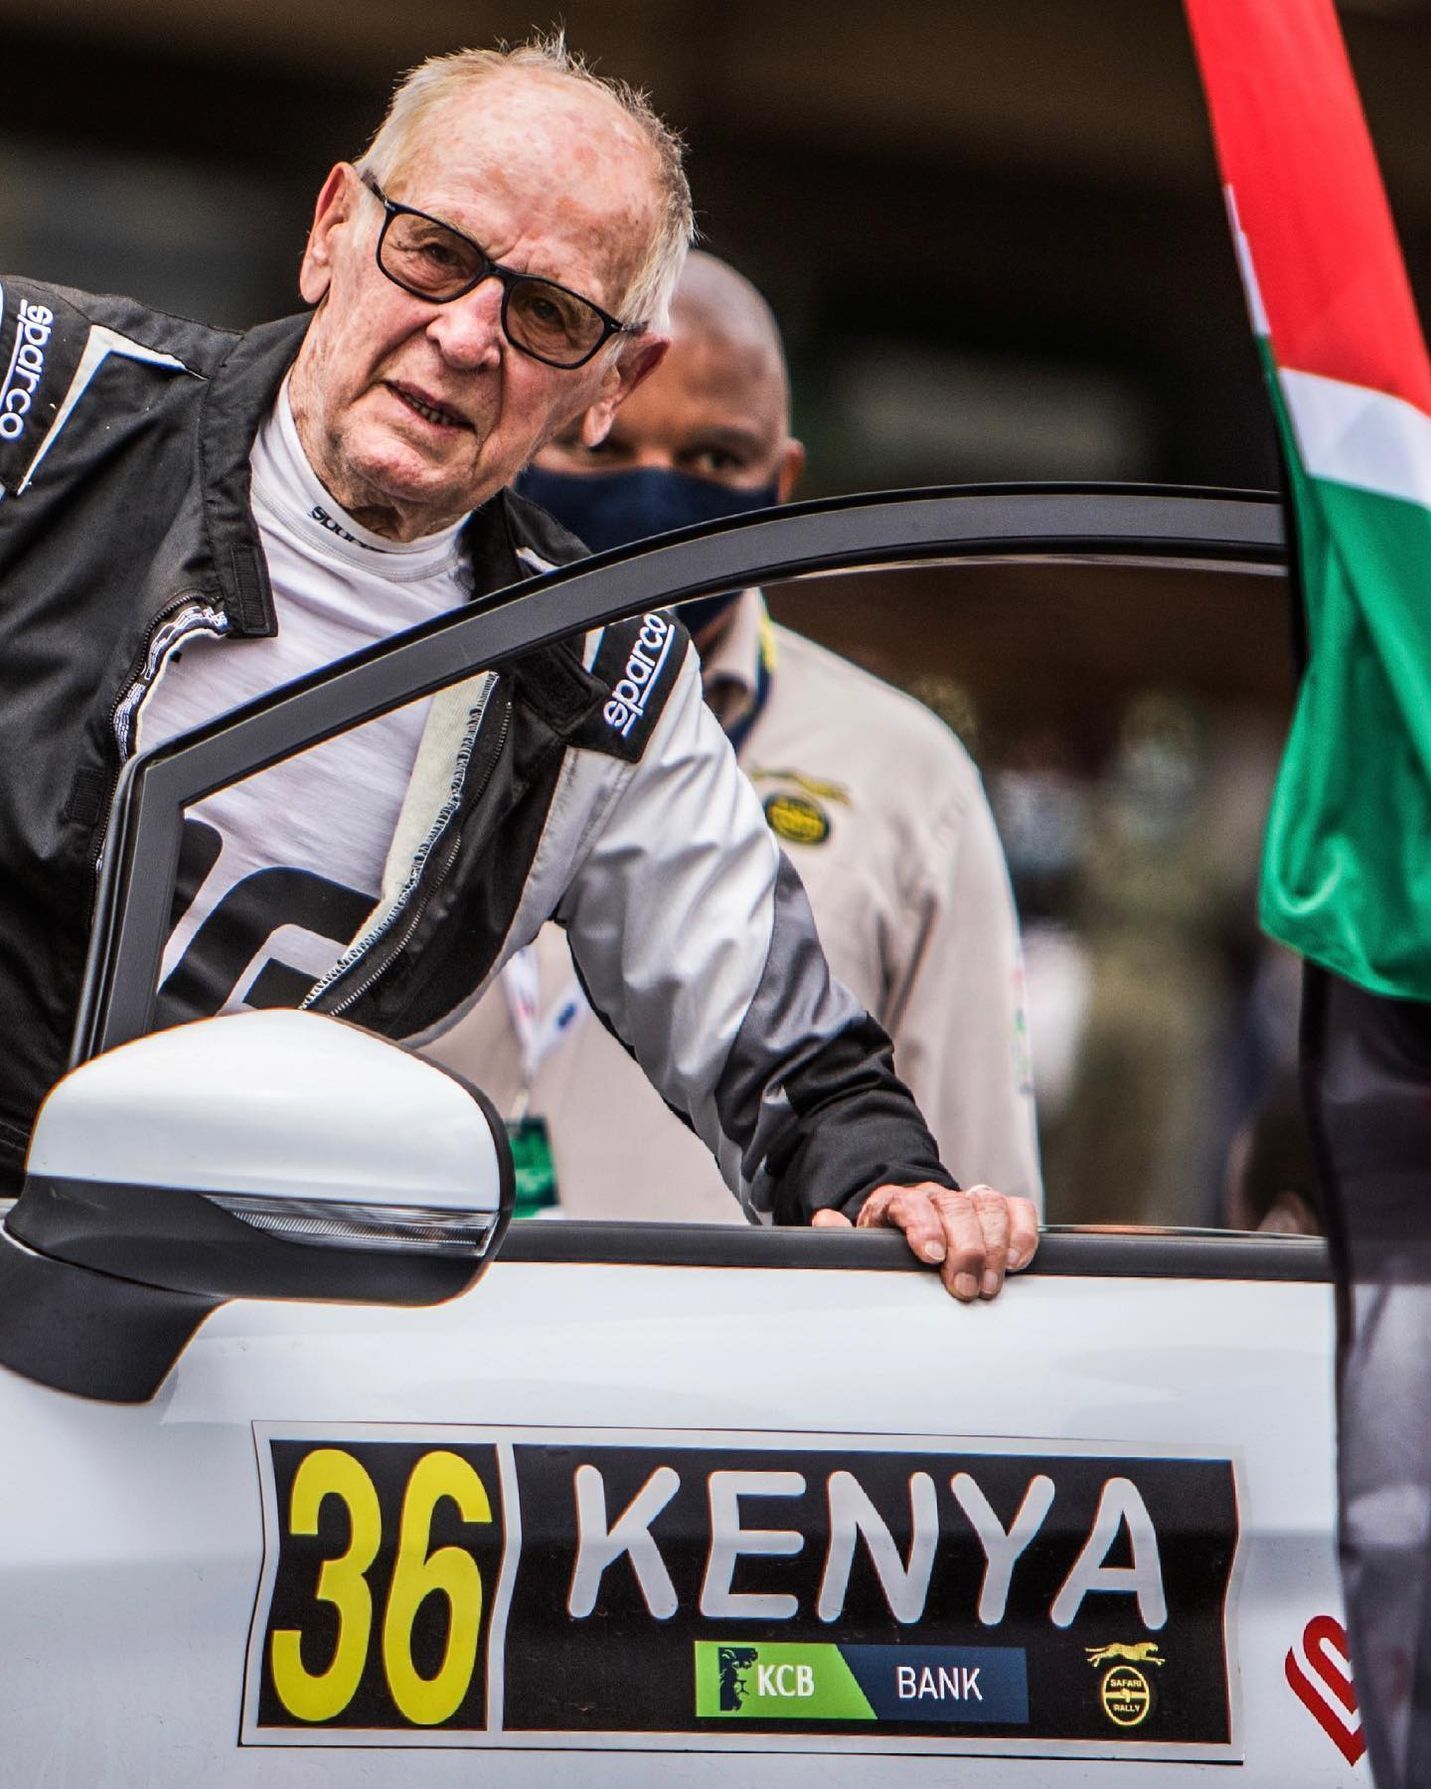 Sobiesław Zasada na Safari rallye 2021